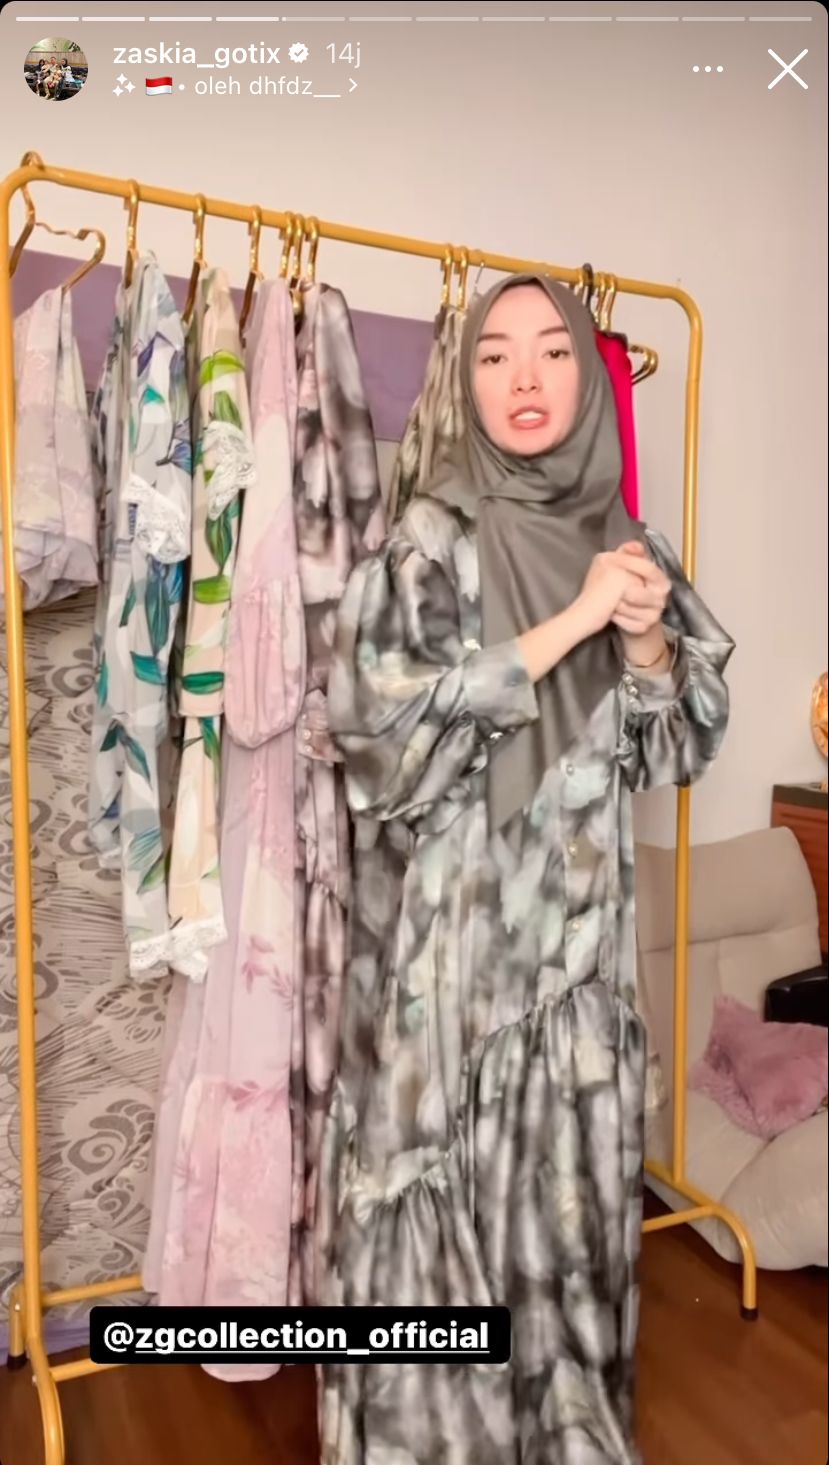 Hasil jahit dengan tangan sendiri, begini 9 potret Zaskia Gotik banting stir jualan baju dan hijab